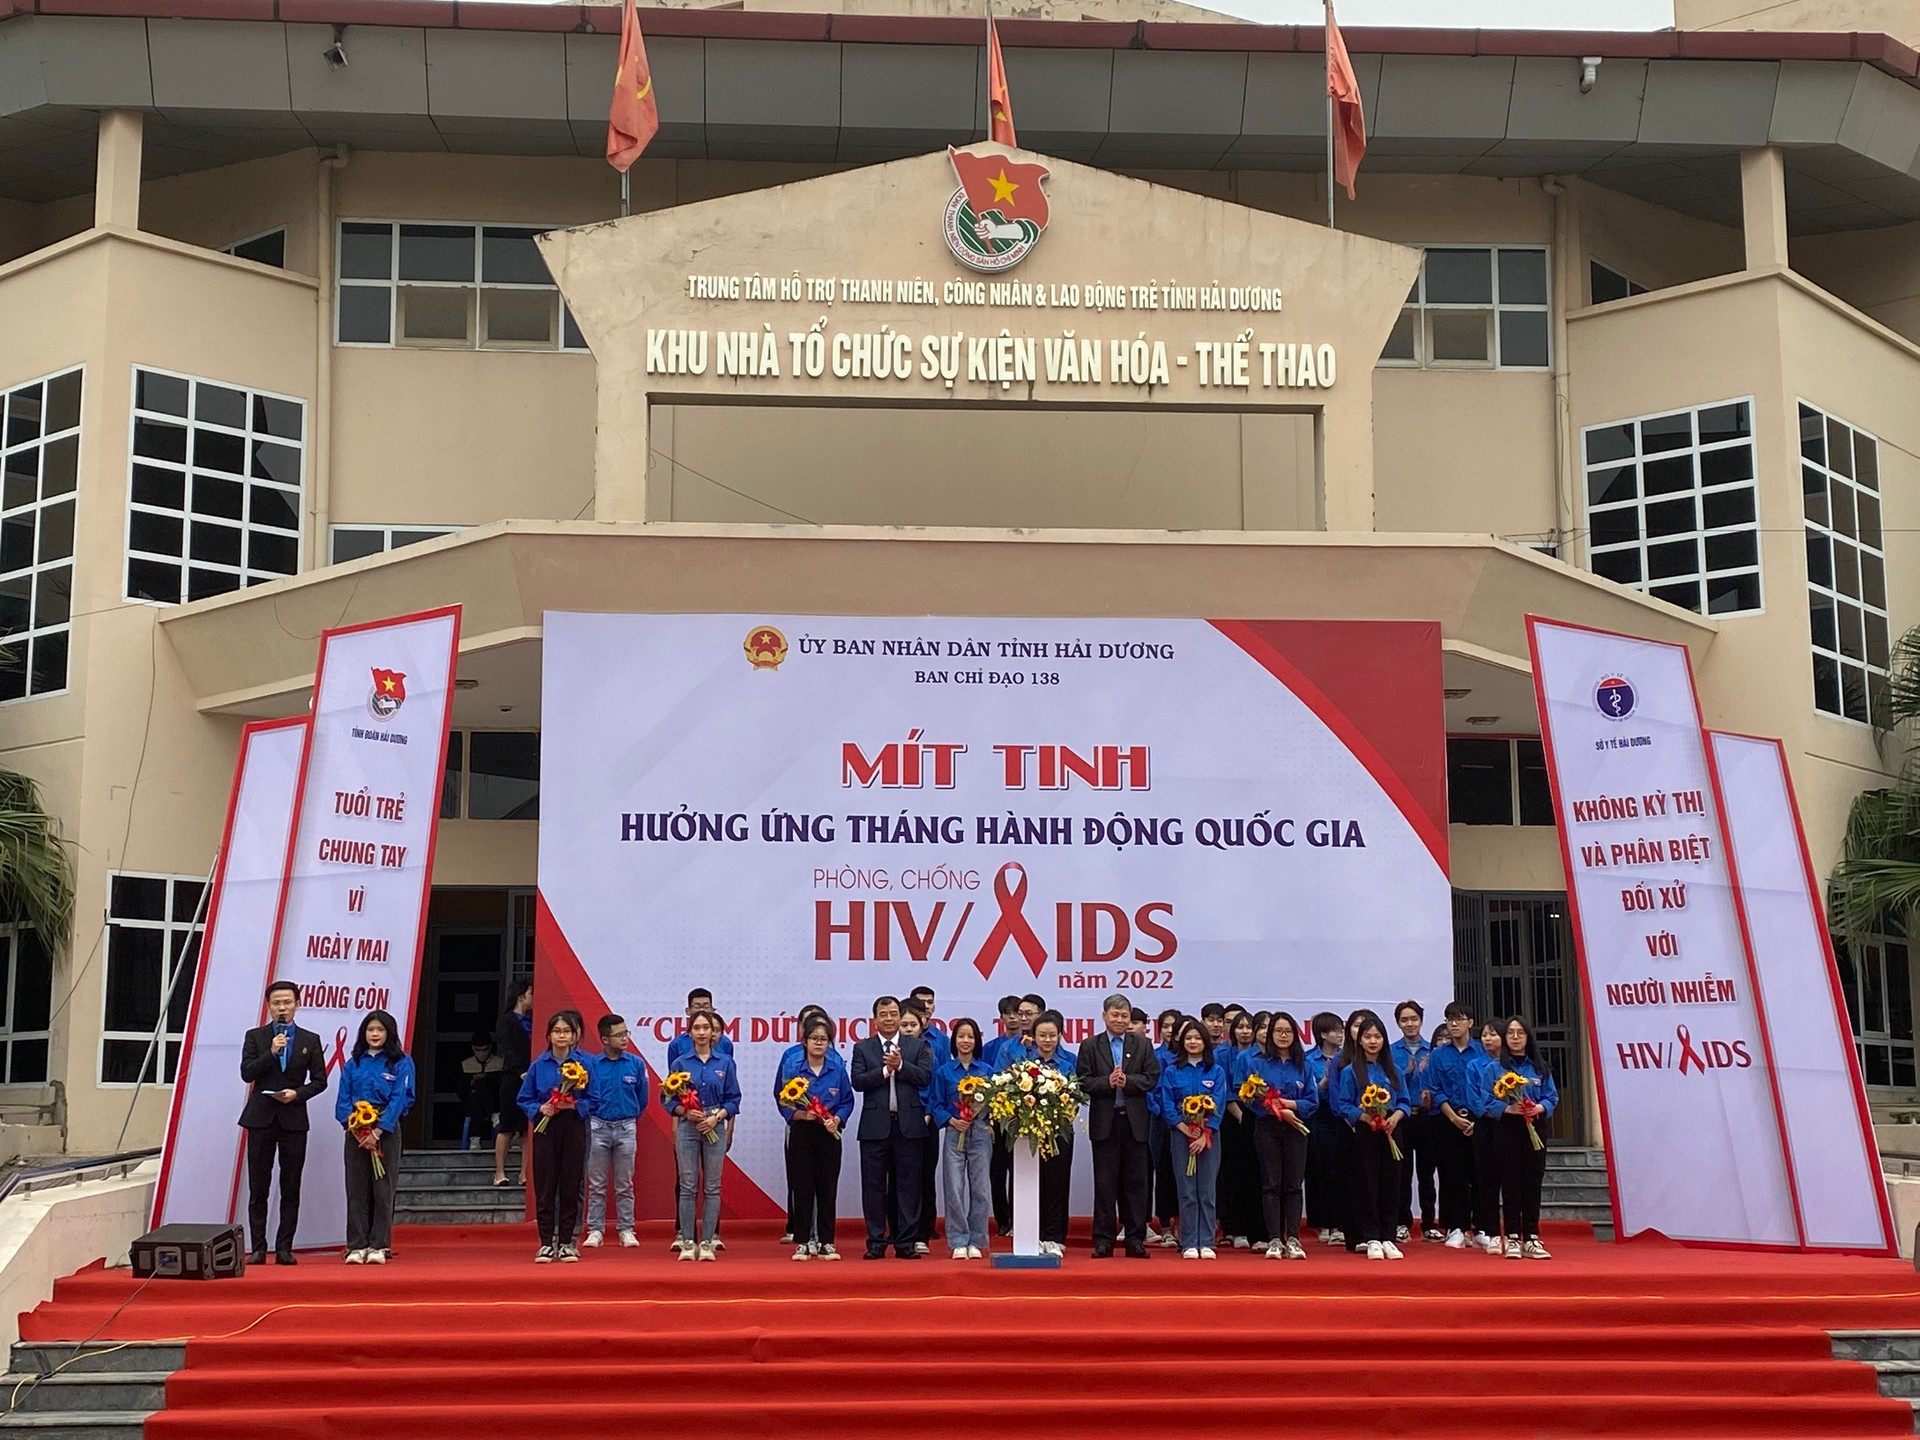 2.Ra mắt đội hình TNTN tham gia phòng, chống HIV/AIDS.